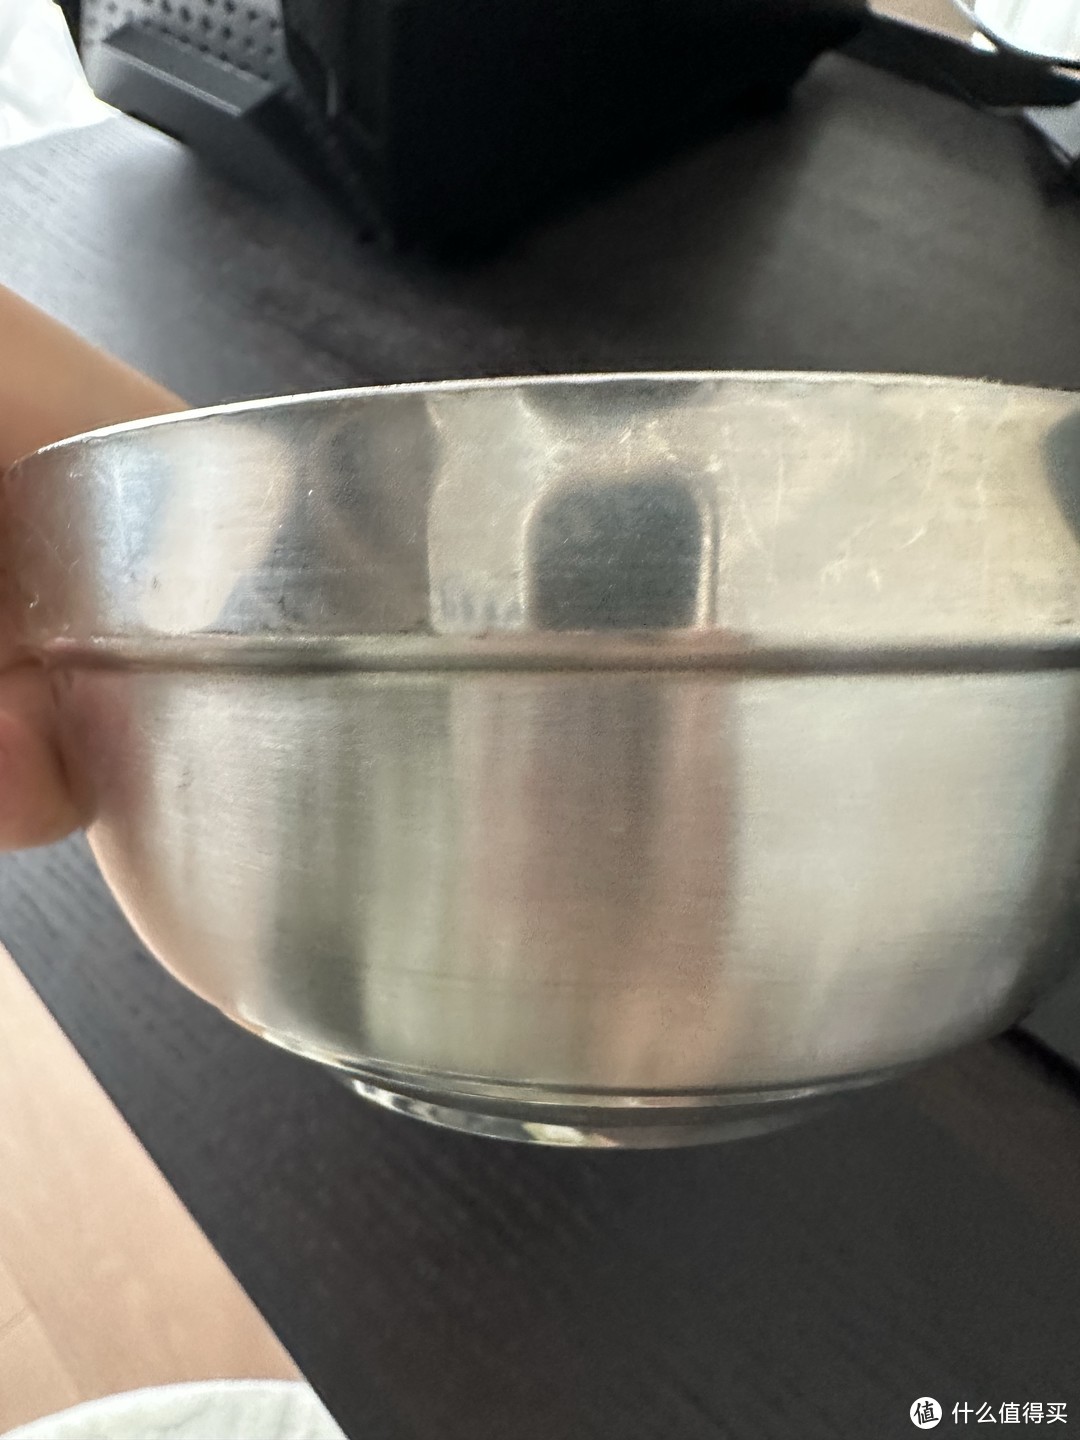 这个不锈钢的碗很适合小朋友